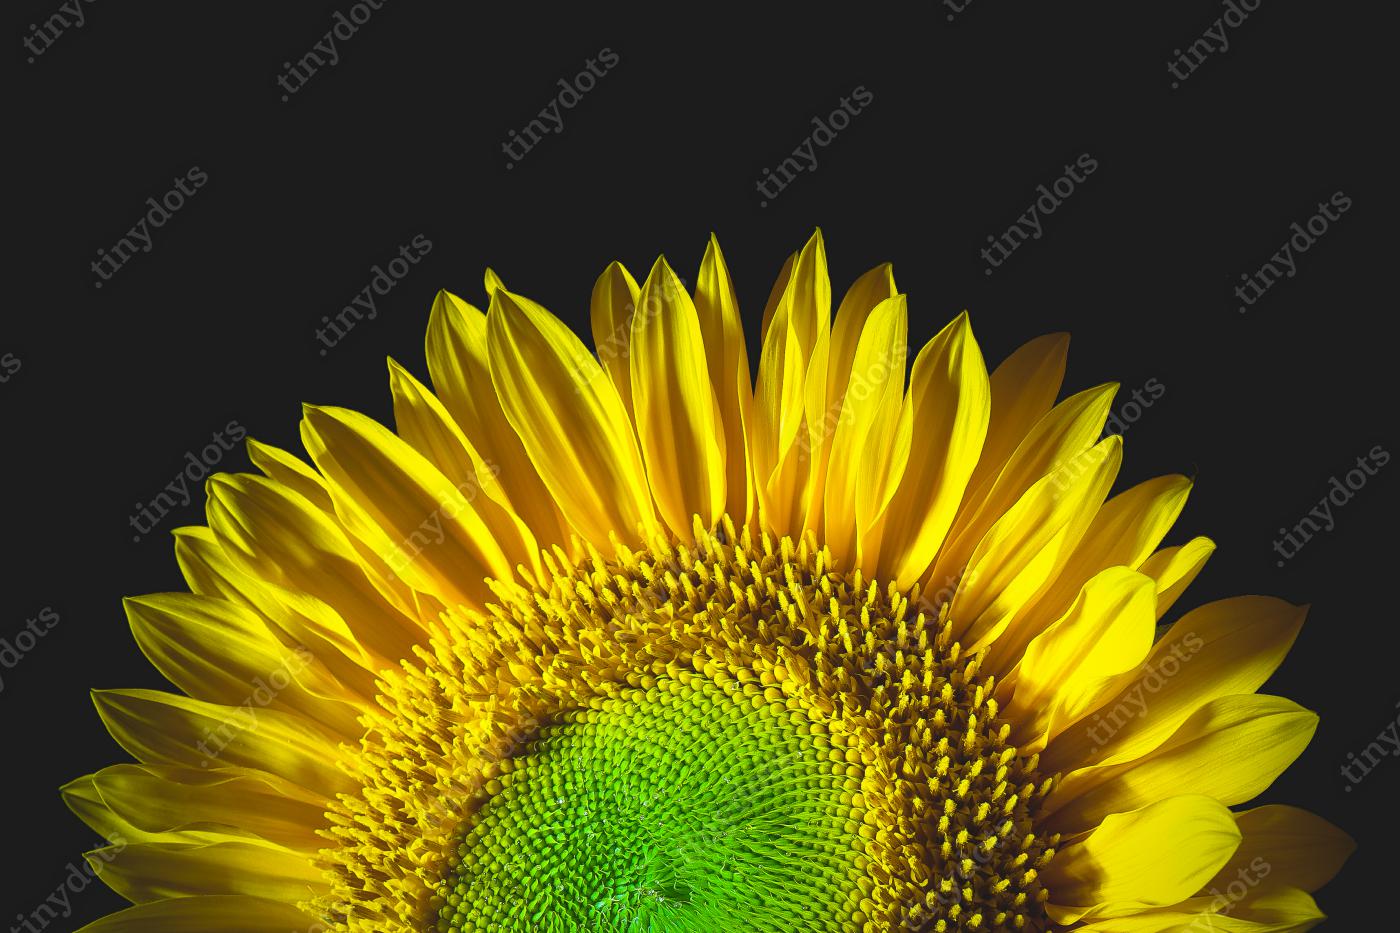 Obraz na pleksi Podświetlany słonecznik